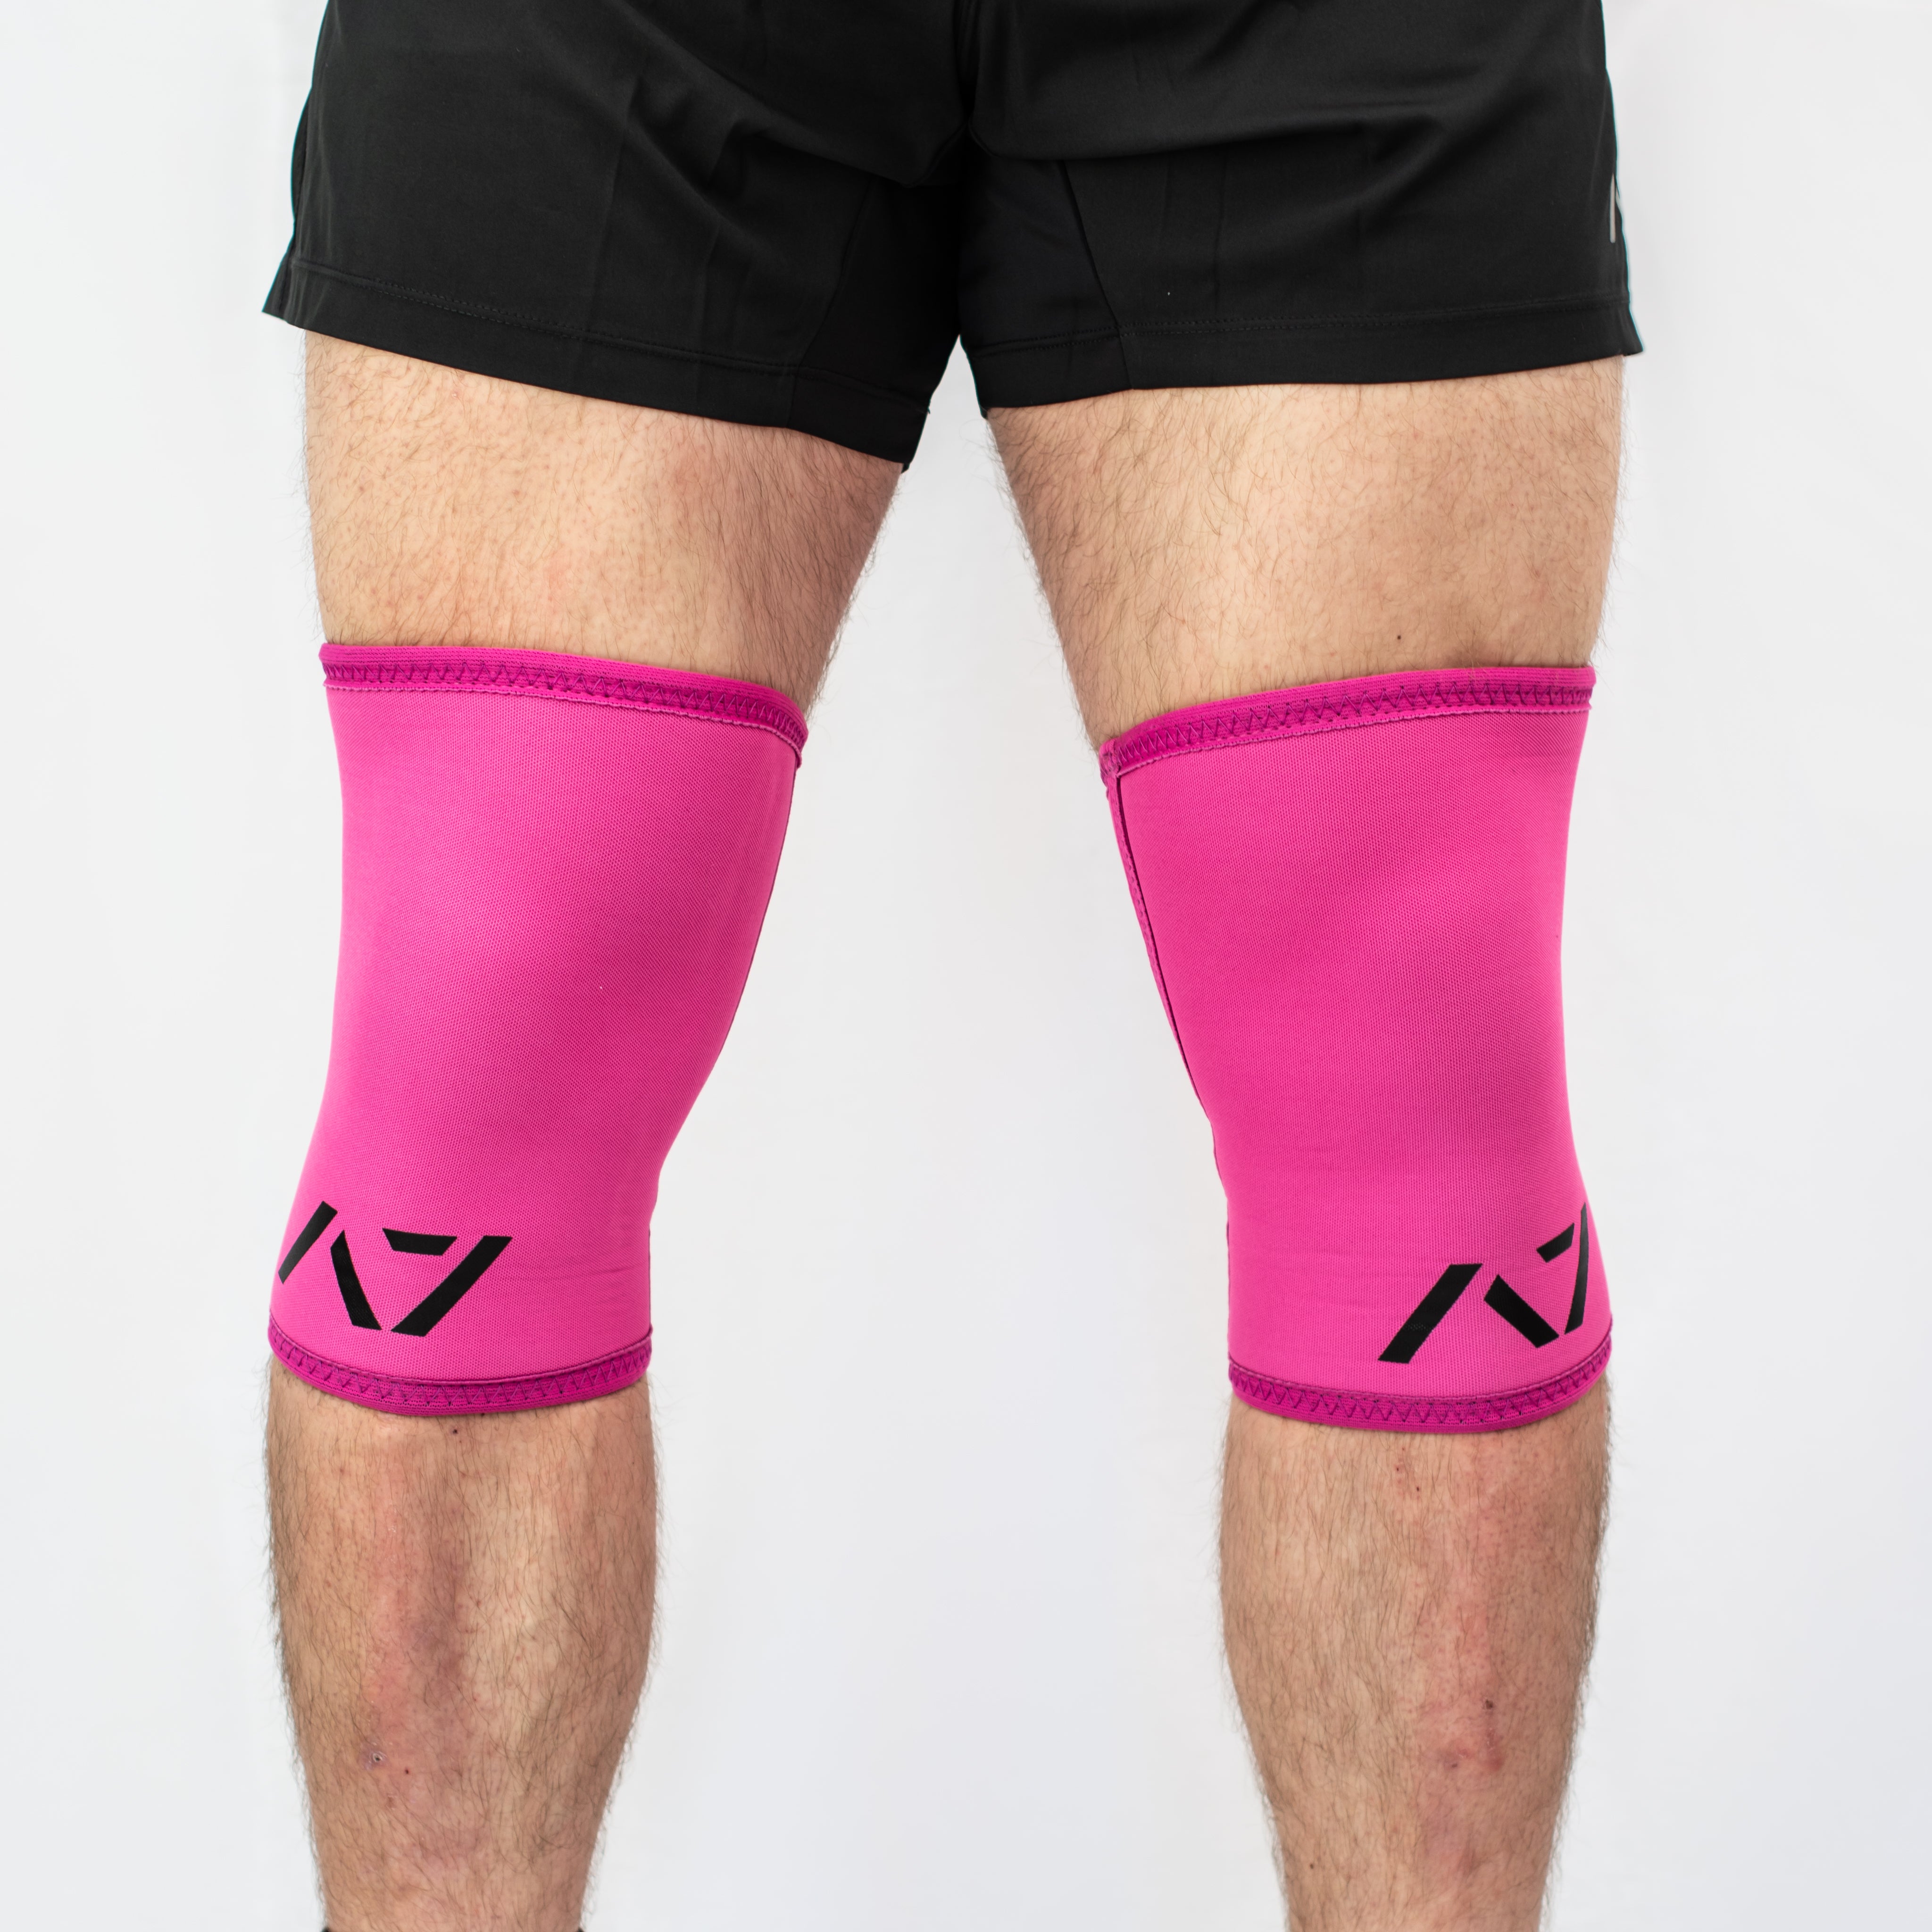 a7 knee sleeves